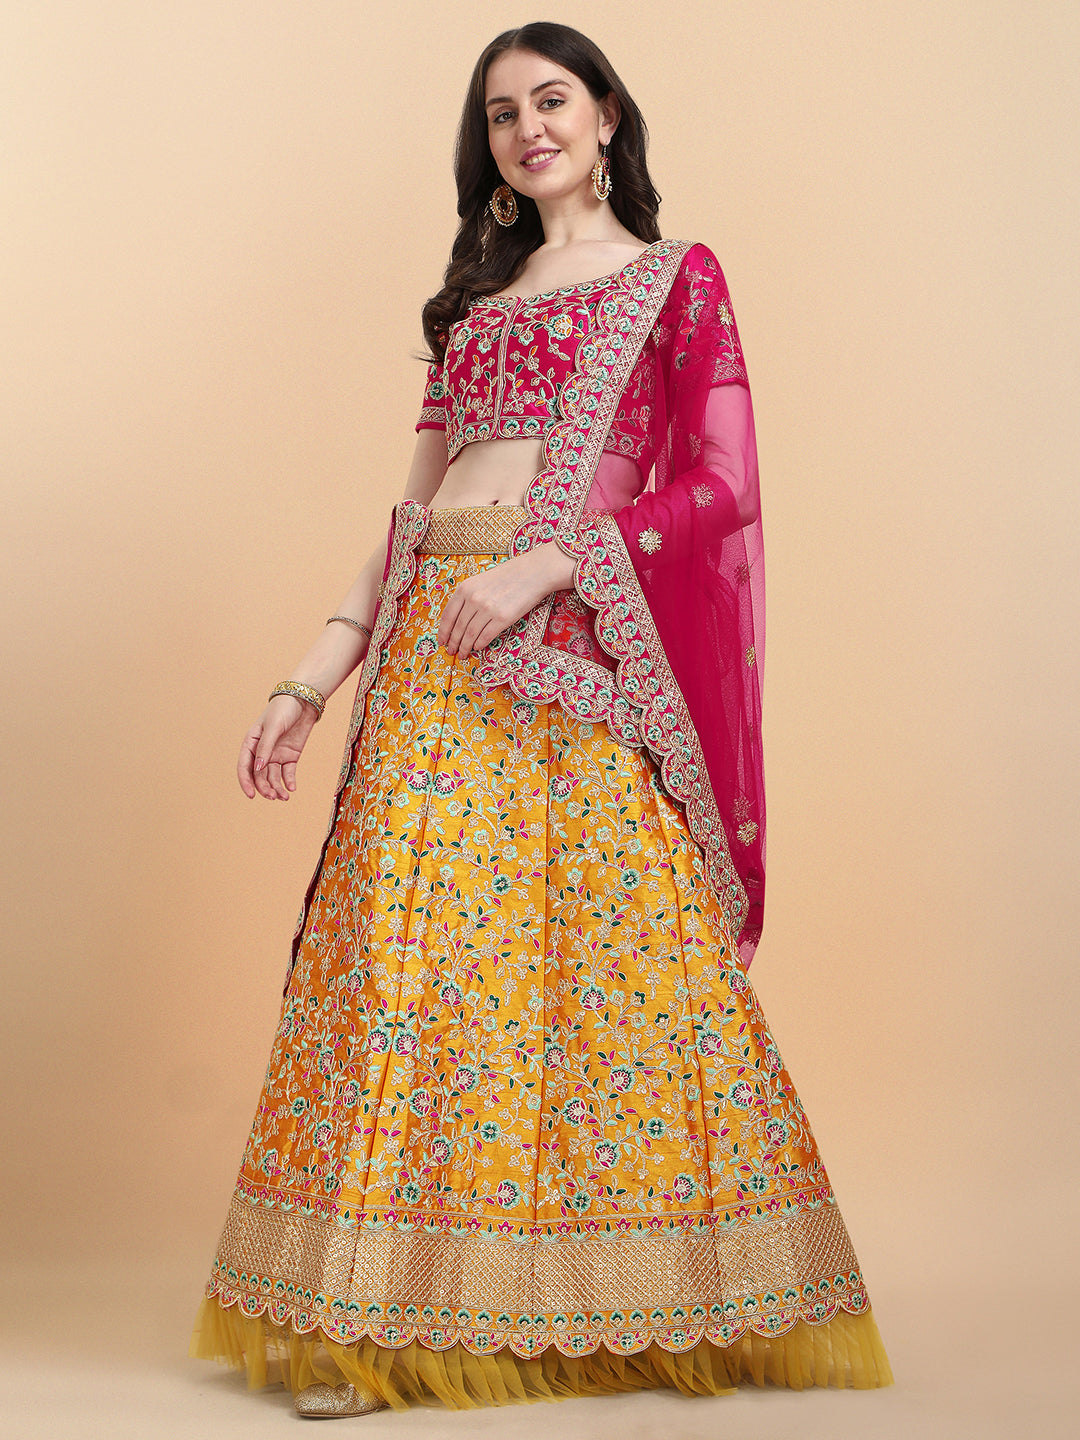 Stunning Yellow And Pink Color Embroidered Work Lehenga Choli